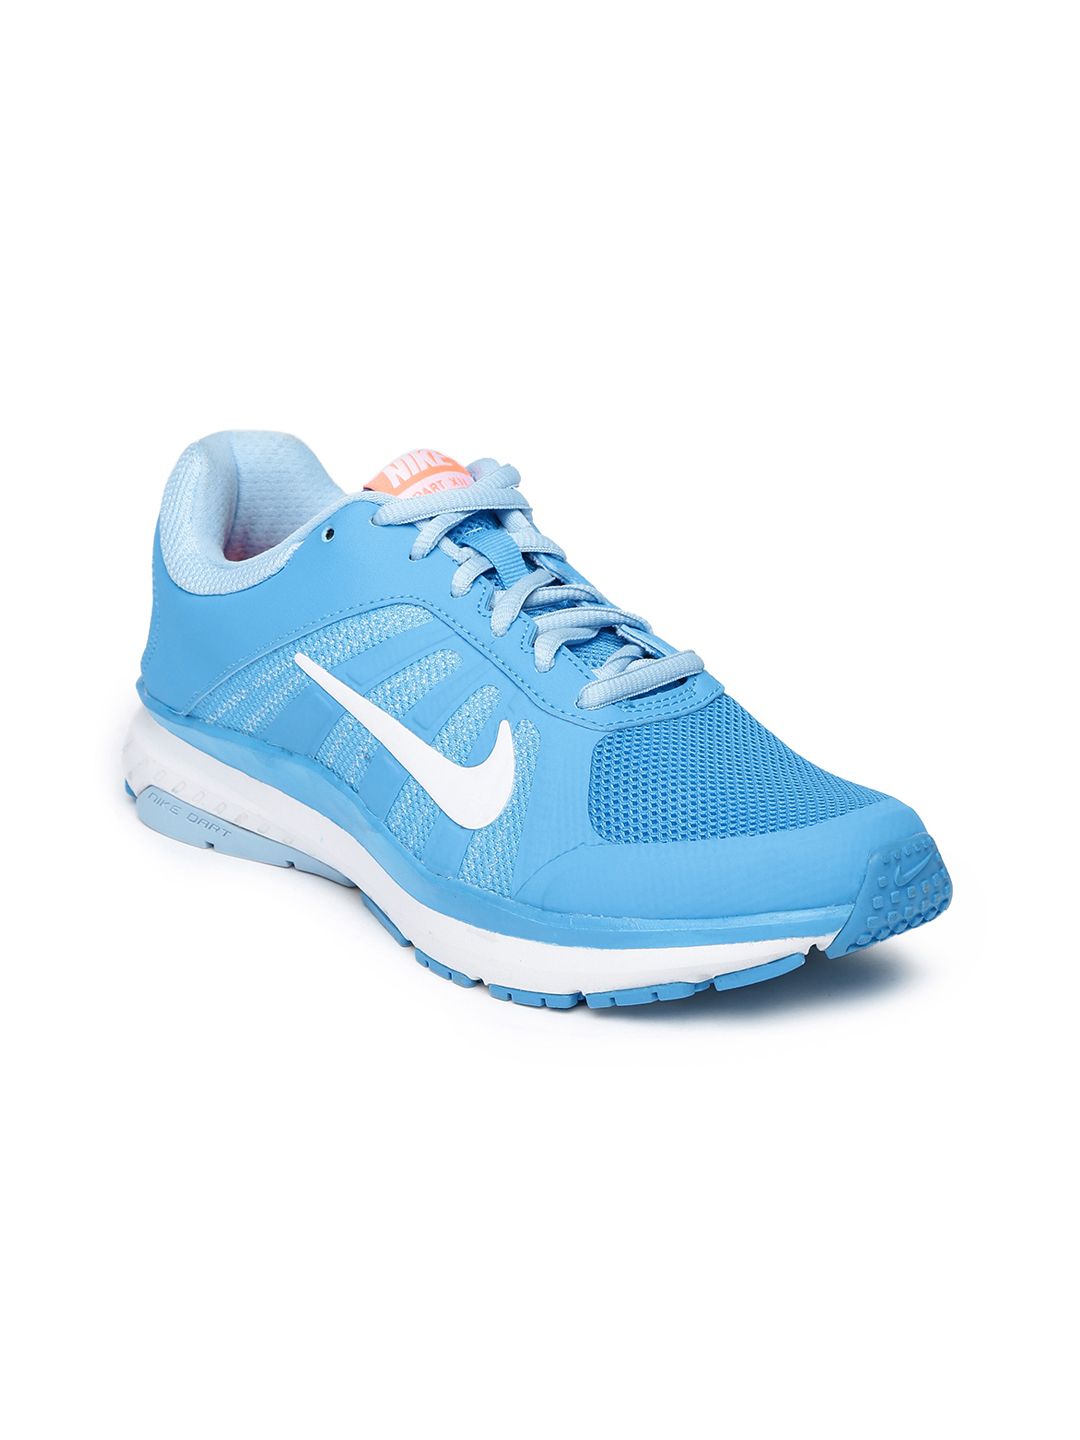 Buy Nike Women Blue Dart 12 Msl Running Shoes Sports Shoes For Women